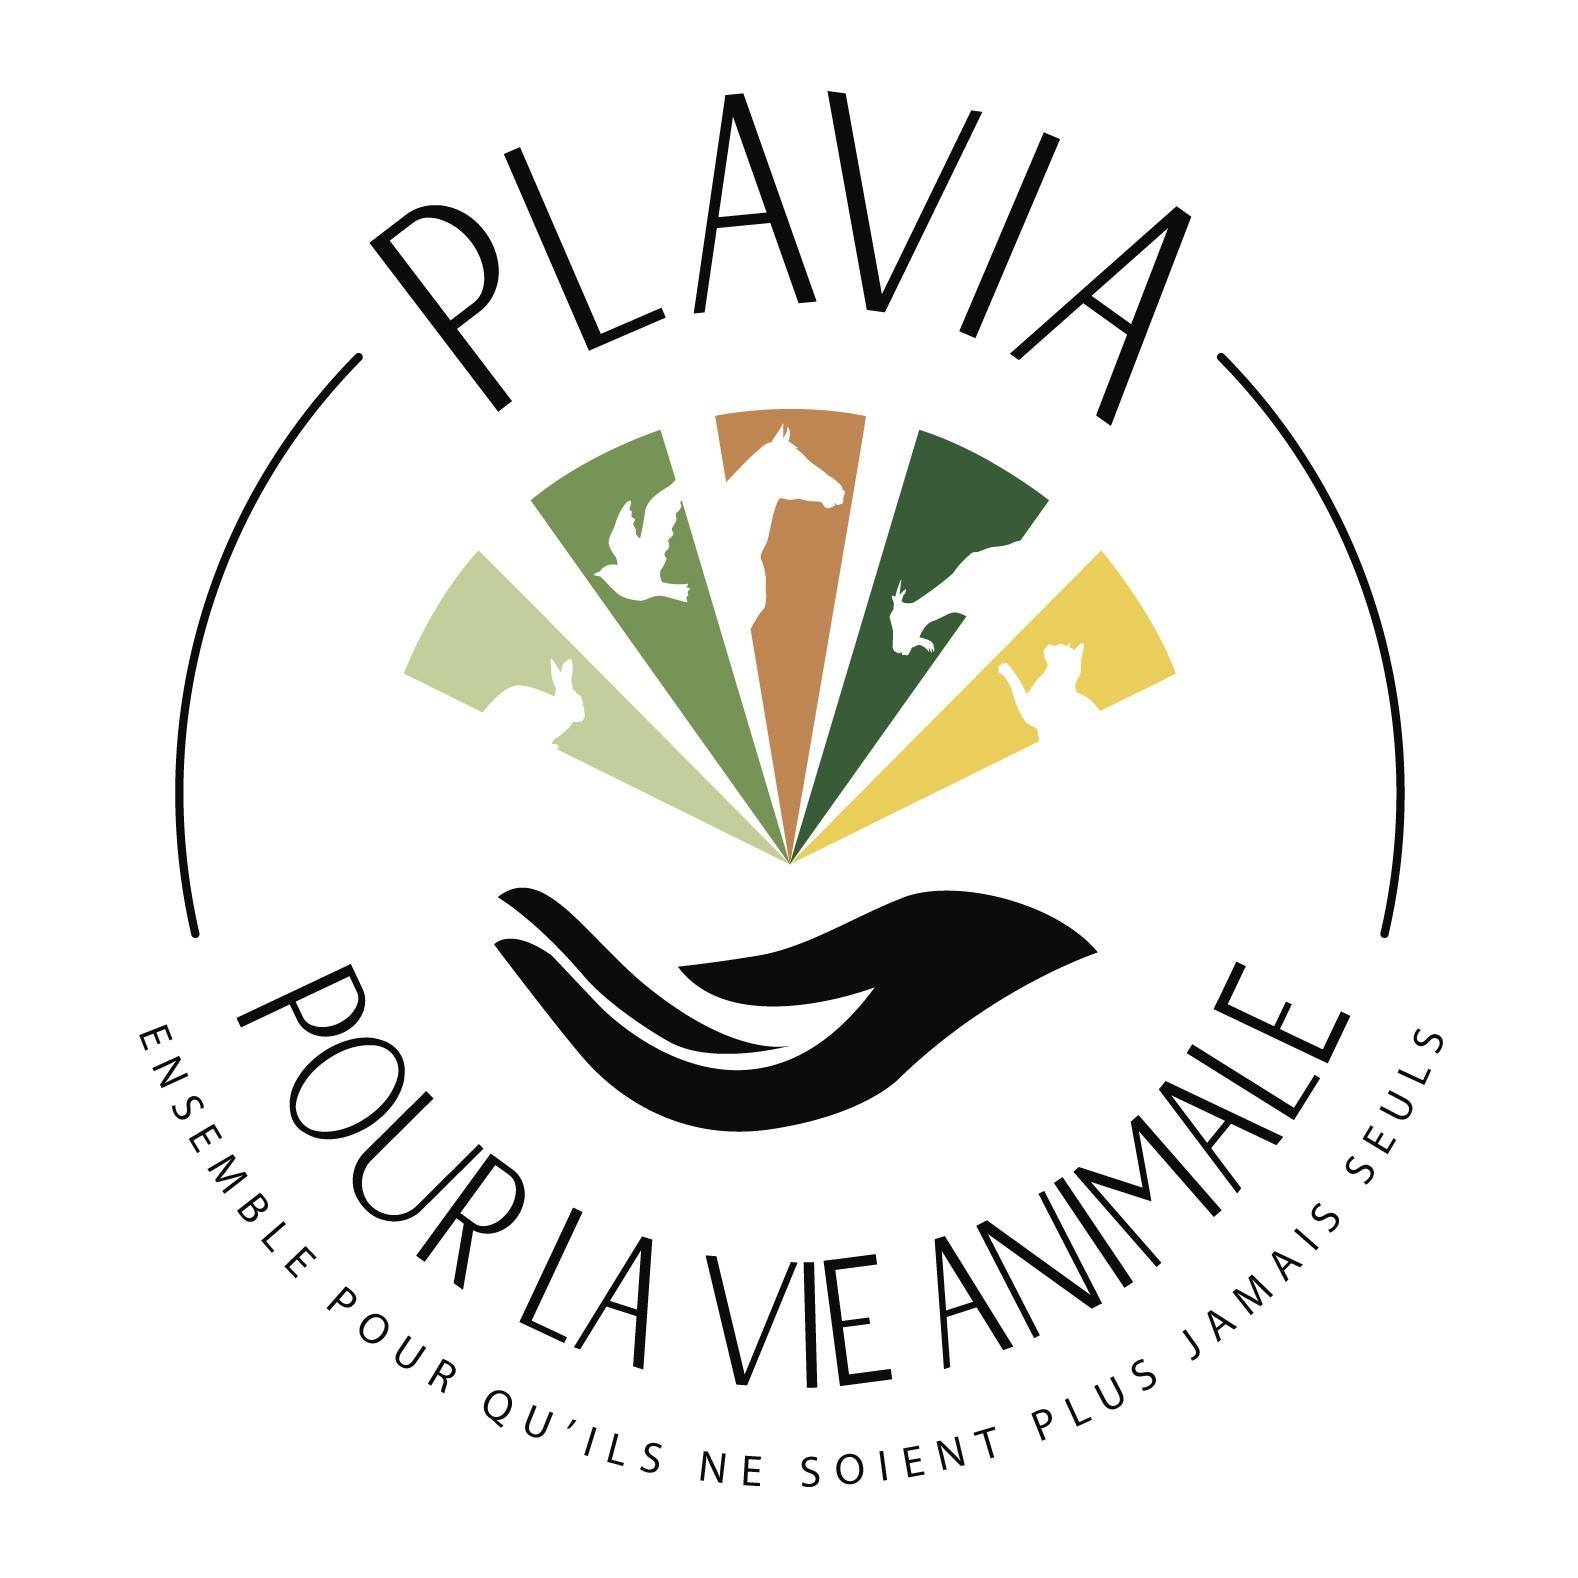 PLAVIA : pour la vie animale